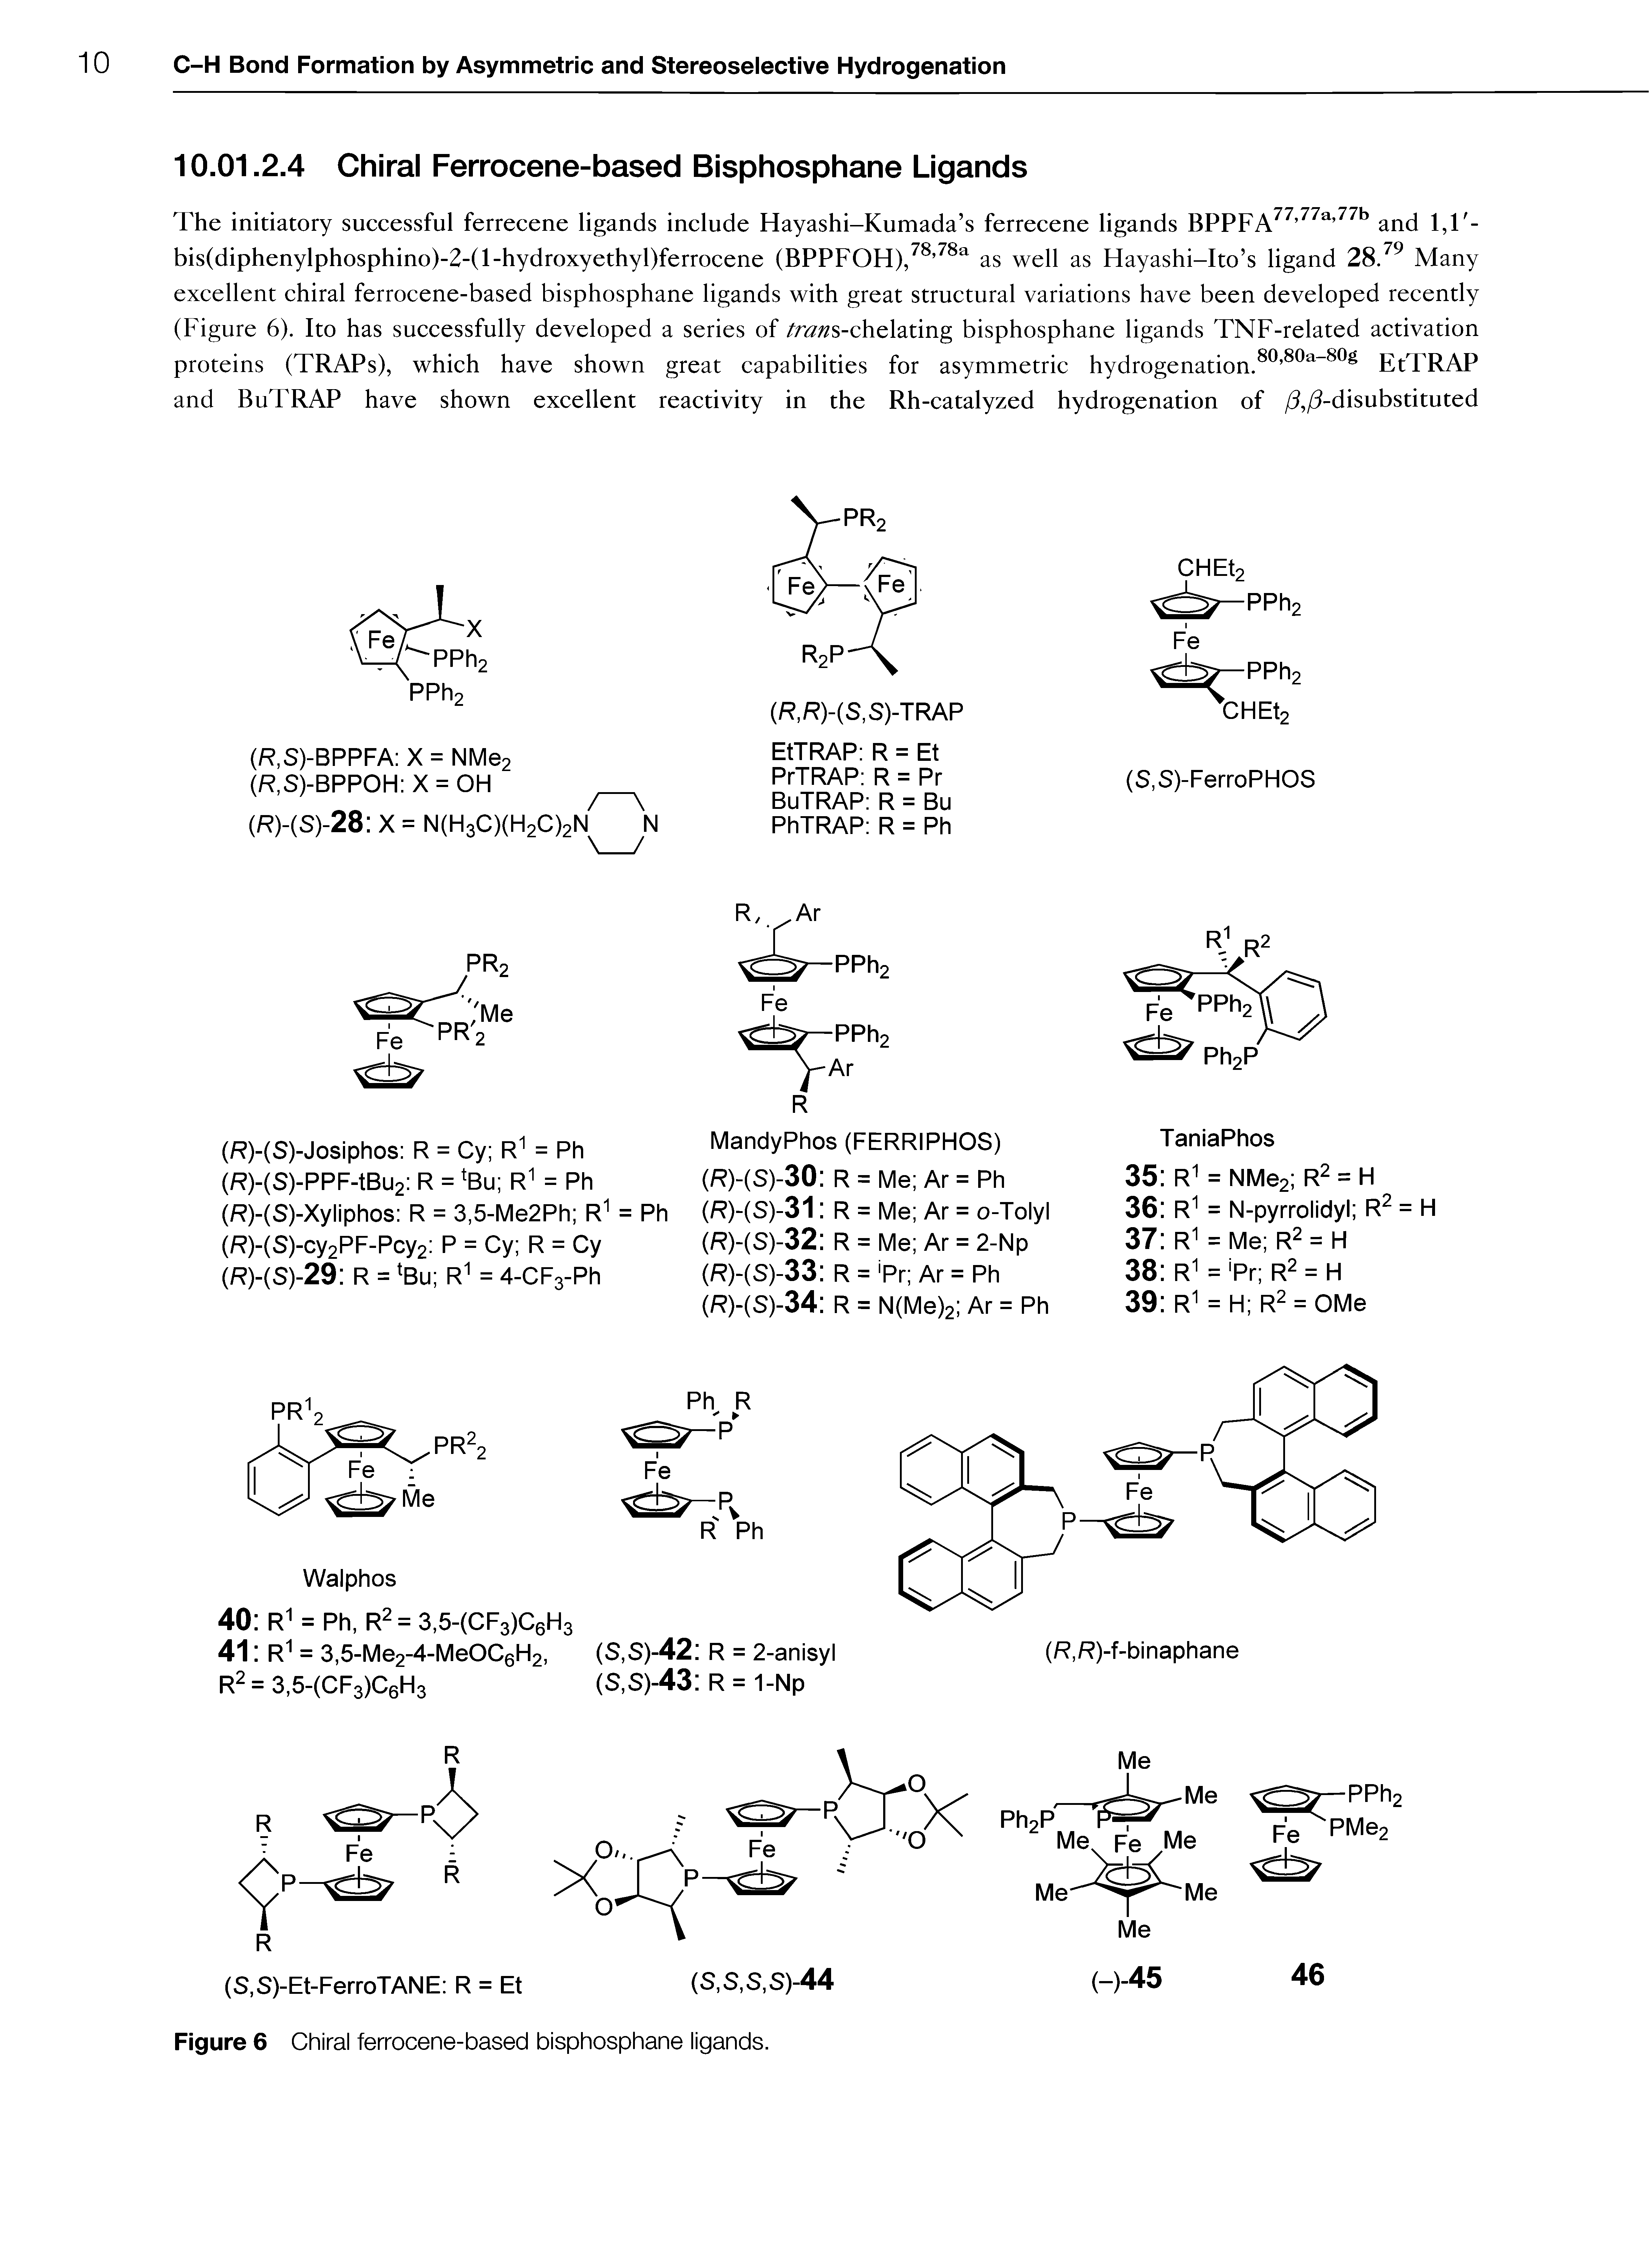 Figure 6 Chiral ferrocene-based bisphosphane ligands.